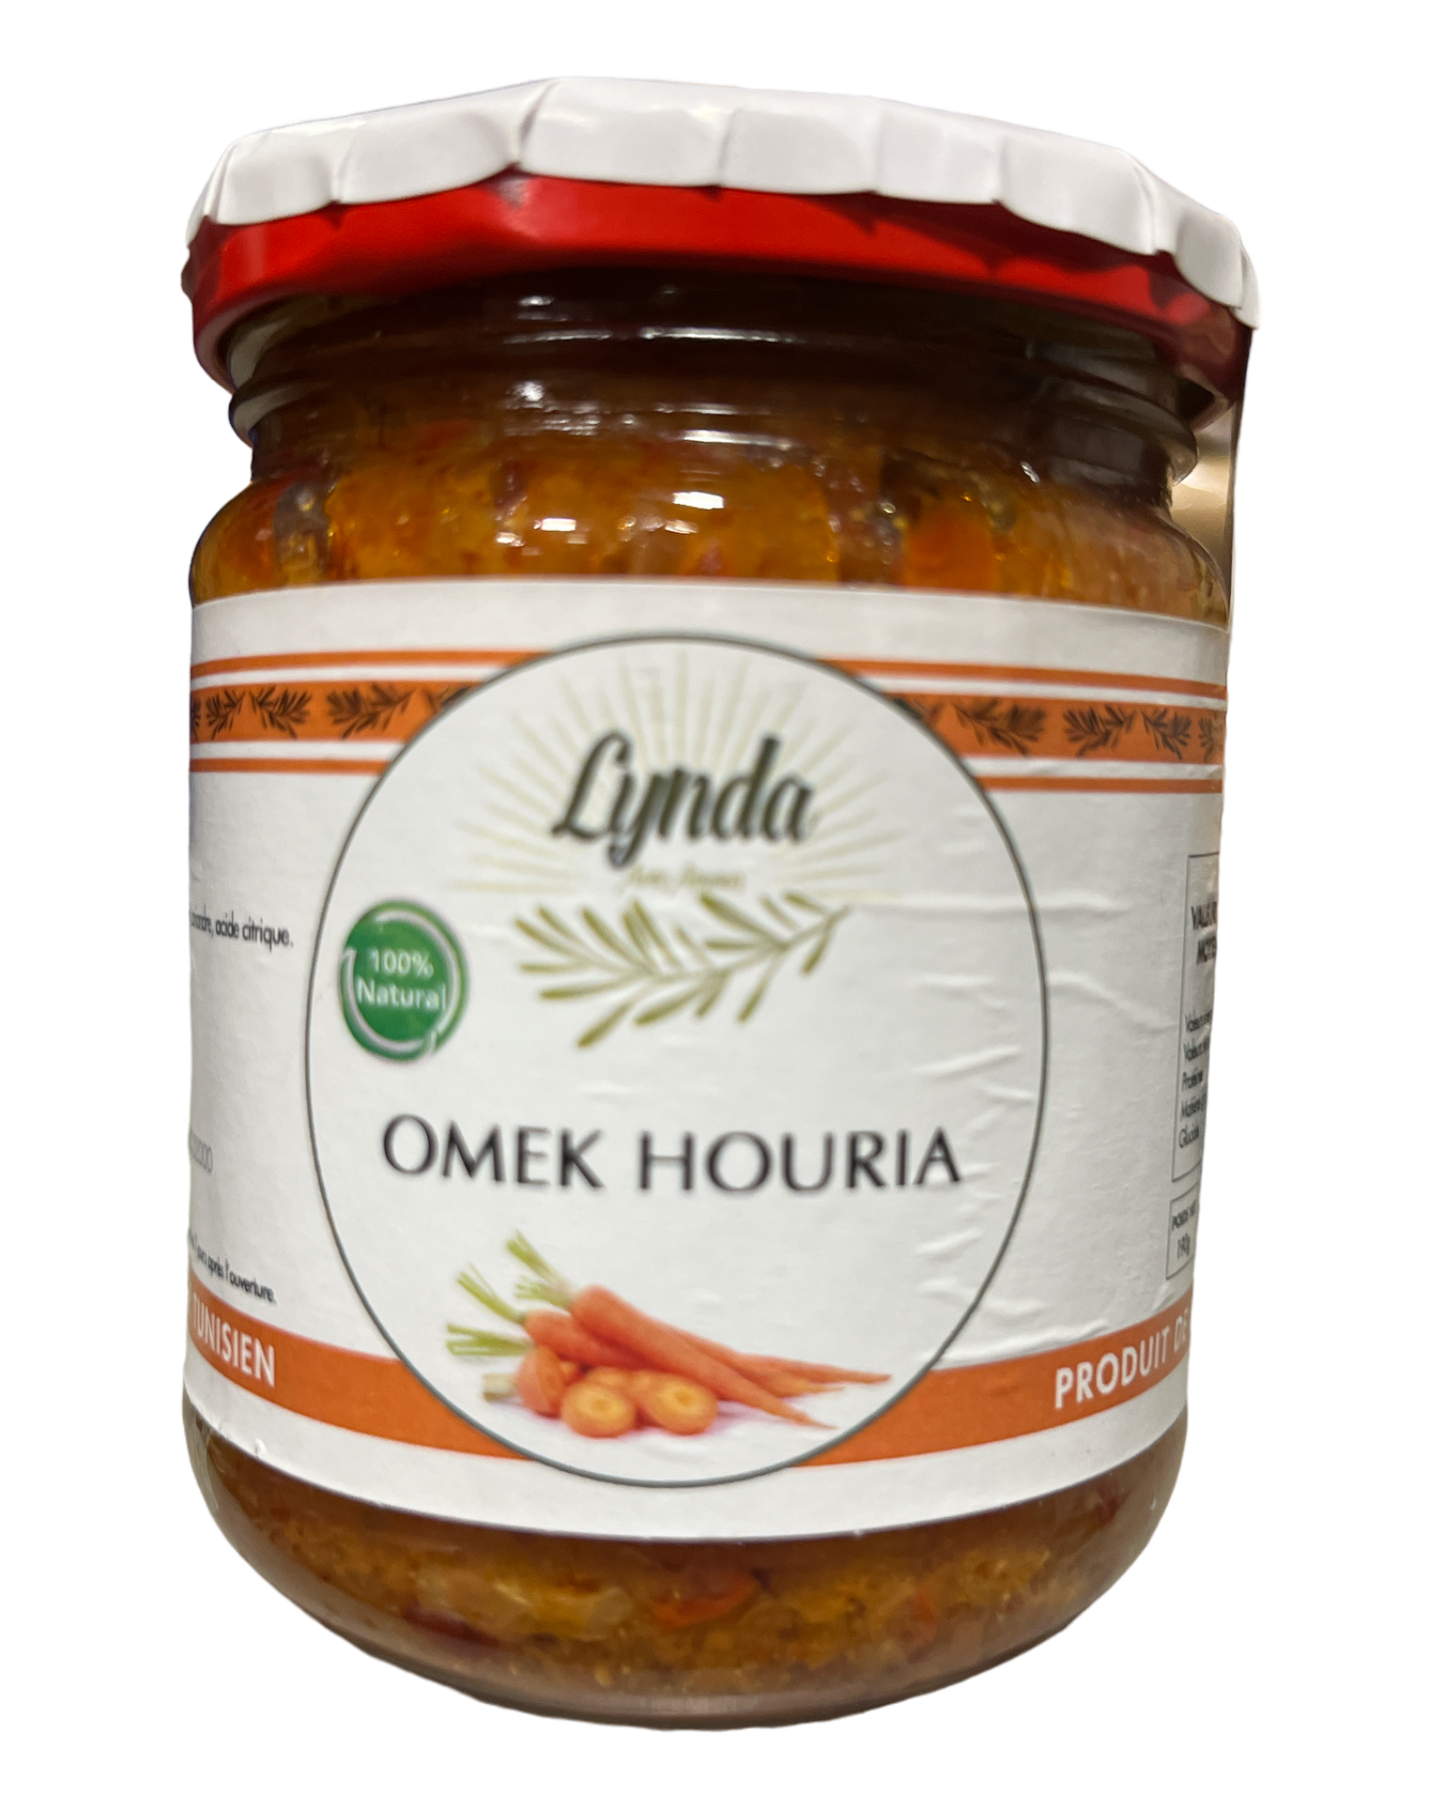 Tunisian  OMEK salad Houria LYNDA 190g